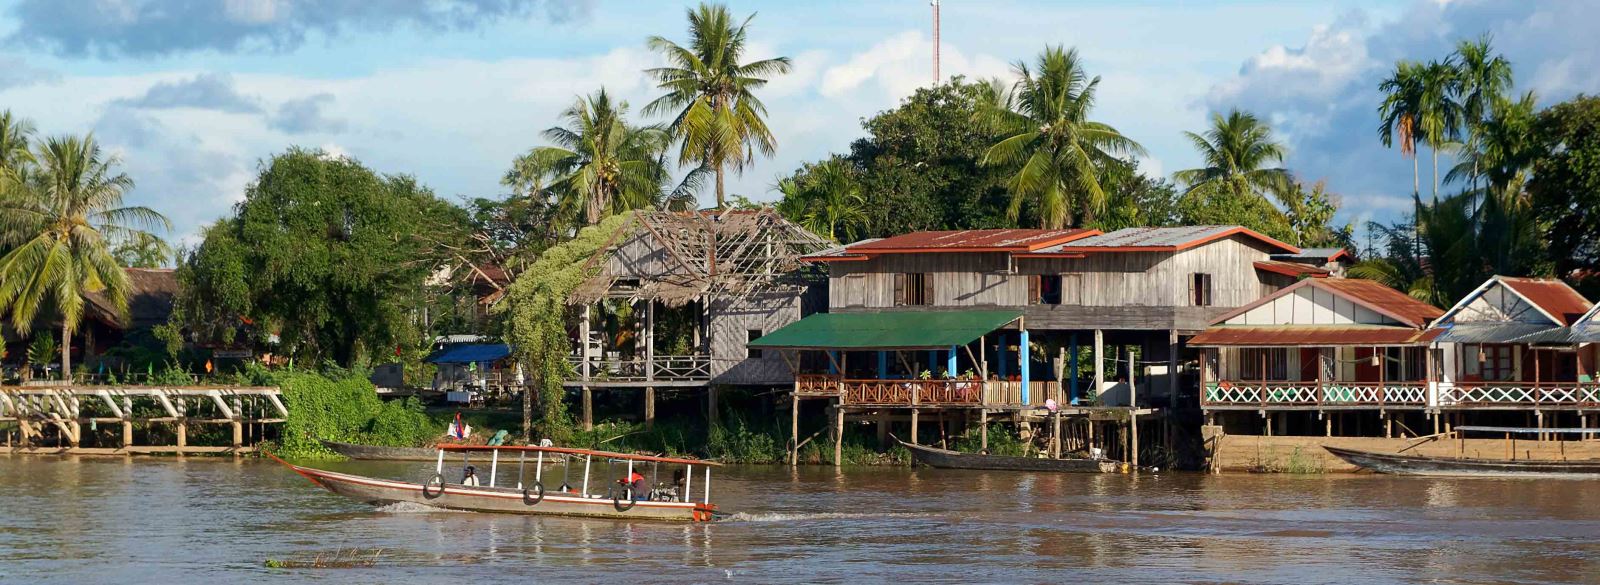 Fate una crociera sul fiume Mekong